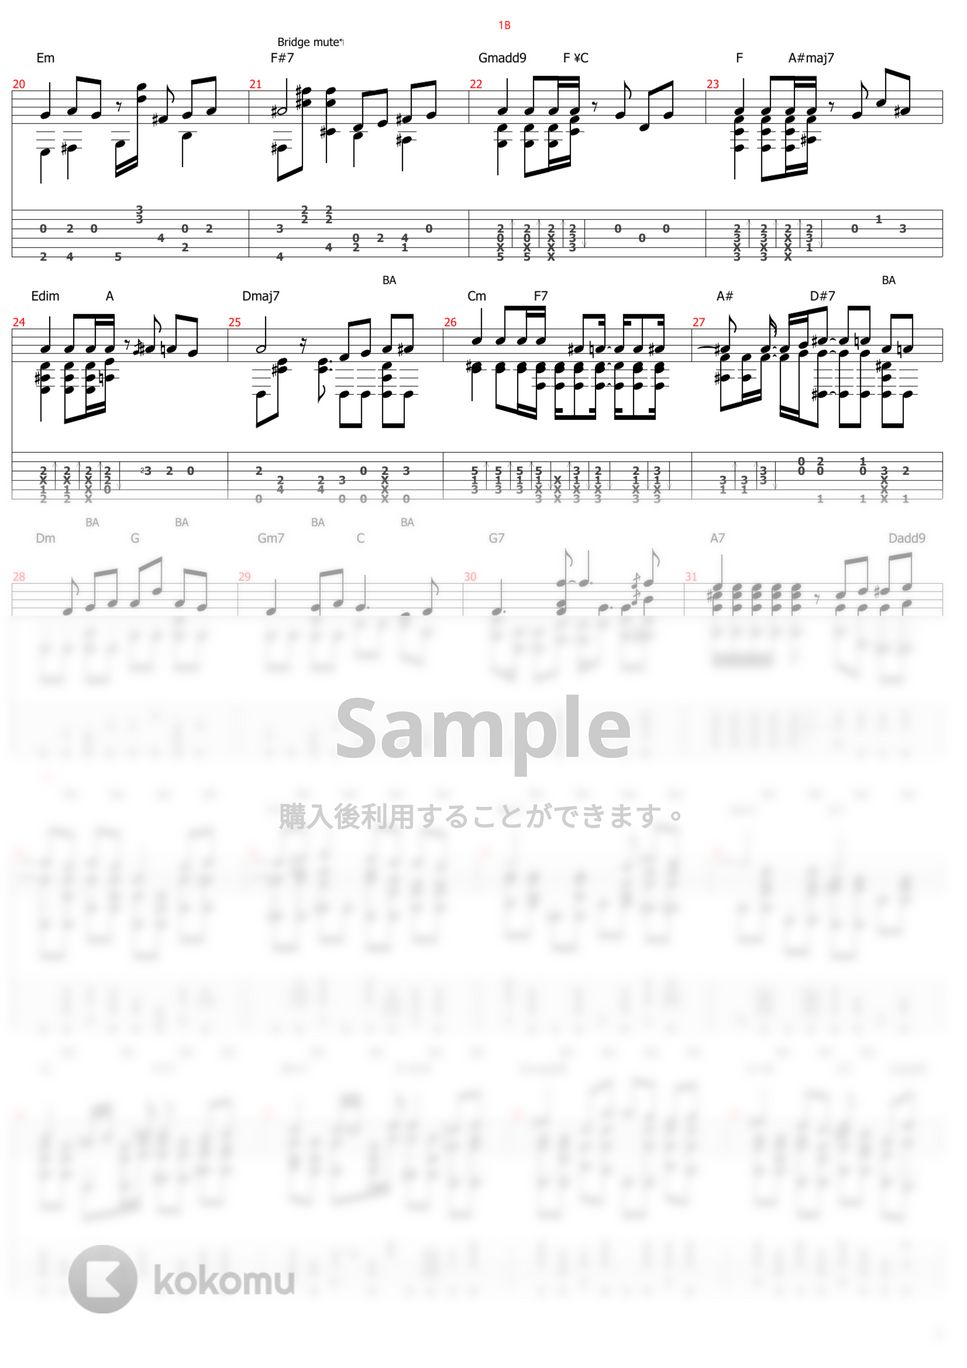 スパイファミリー - ミックスナッツ (ソロギター) by おさむらいさん